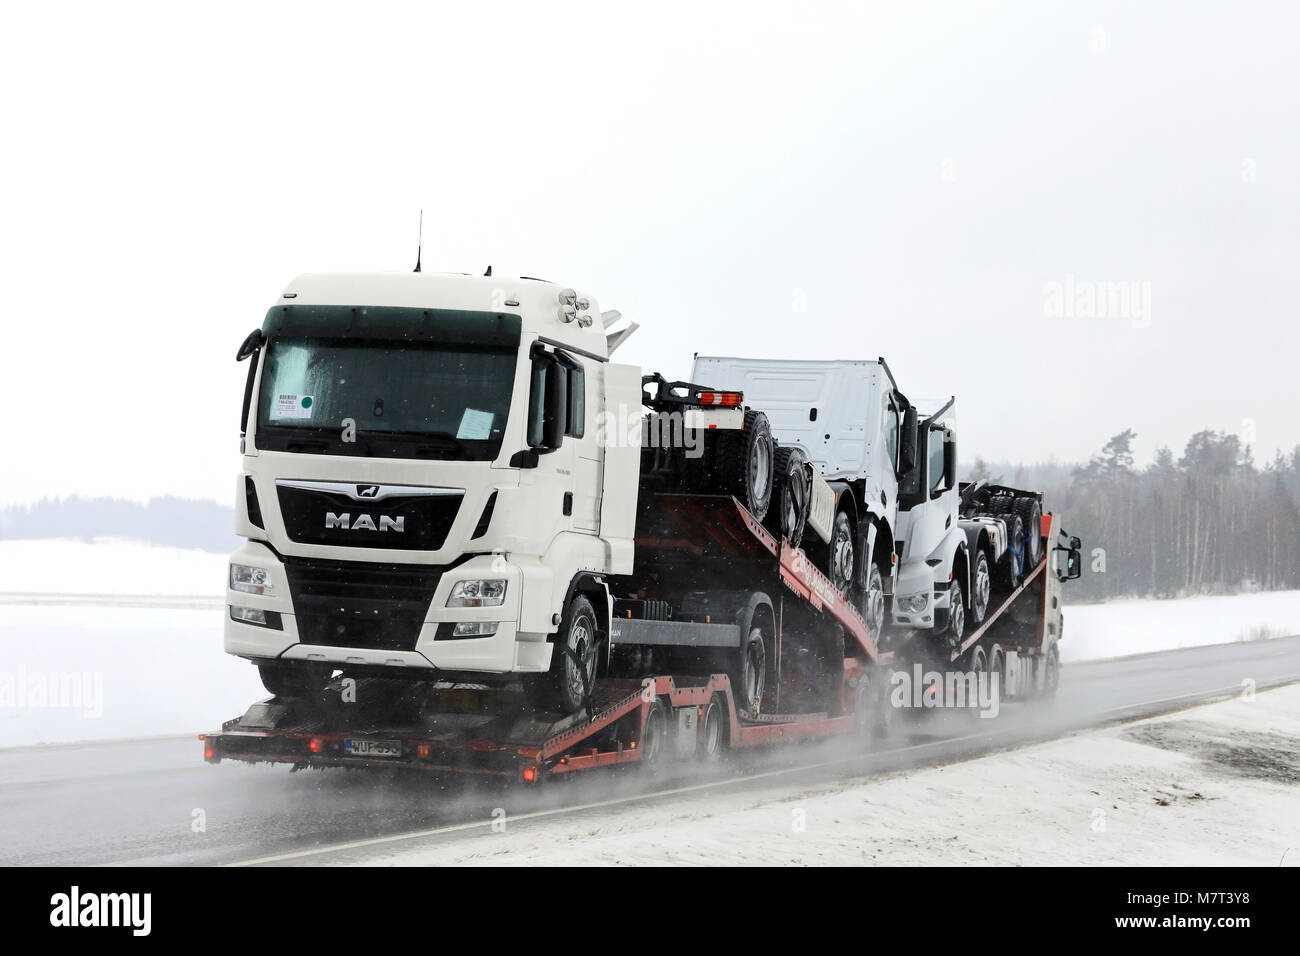 SALO, FINLANDE - le 9 mars 2018 : véhicule transporteur transporte homme nouveau et Mercedes-Benz camions lourds sur route mouillée dans la neige dans le sud de la Finlande. Banque D'Images